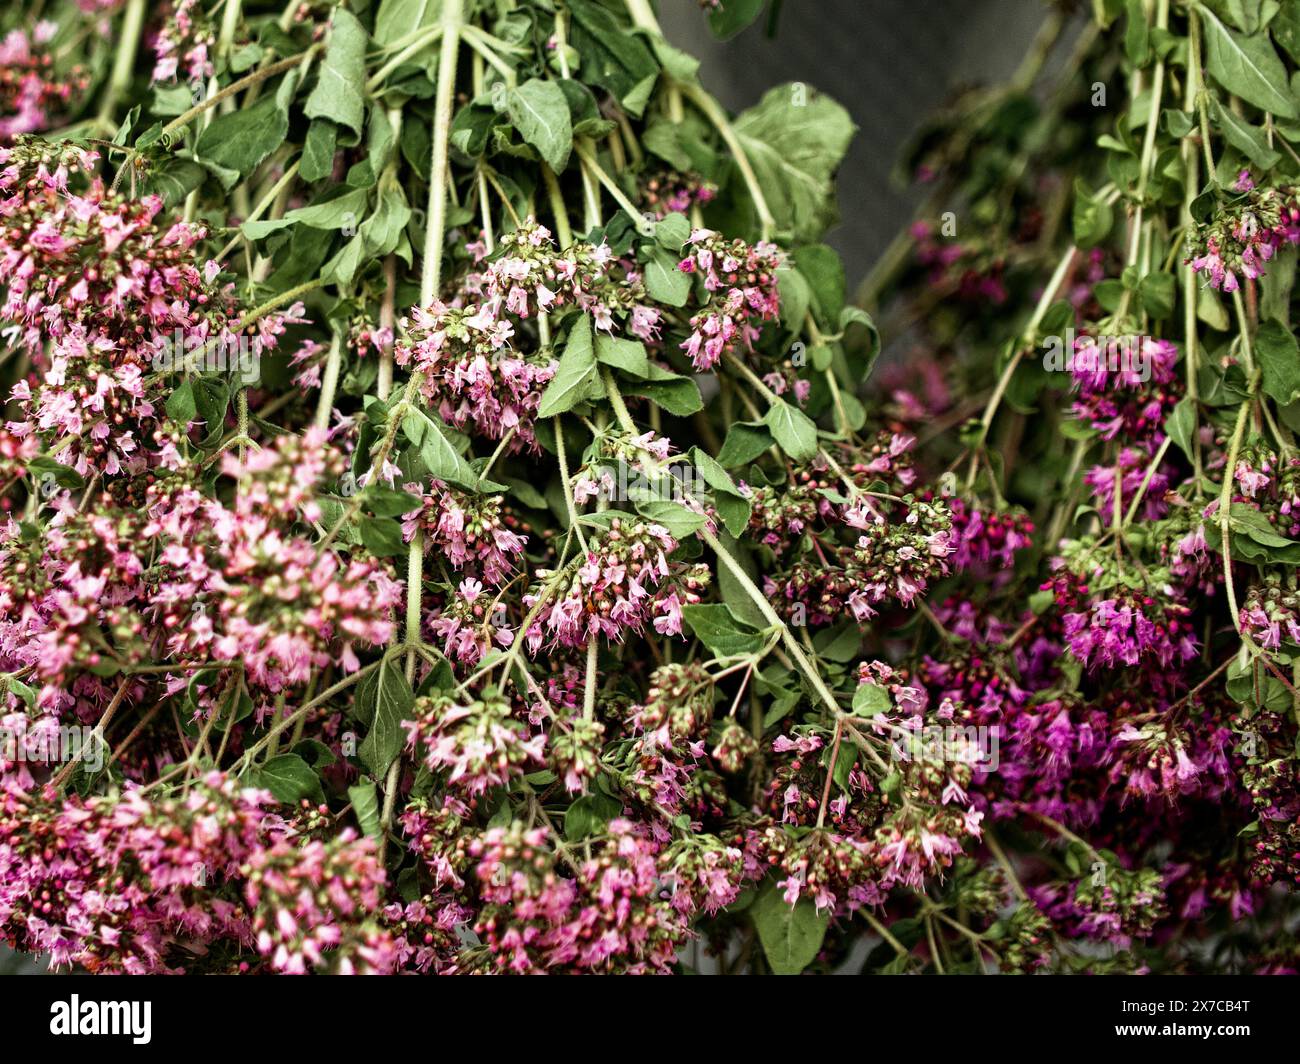 Un primo piano di vivaci fiori rosa e foglie verdi, che mostrano bellezza e crescita naturali, evocando un'atmosfera fresca e organica. Foto Stock